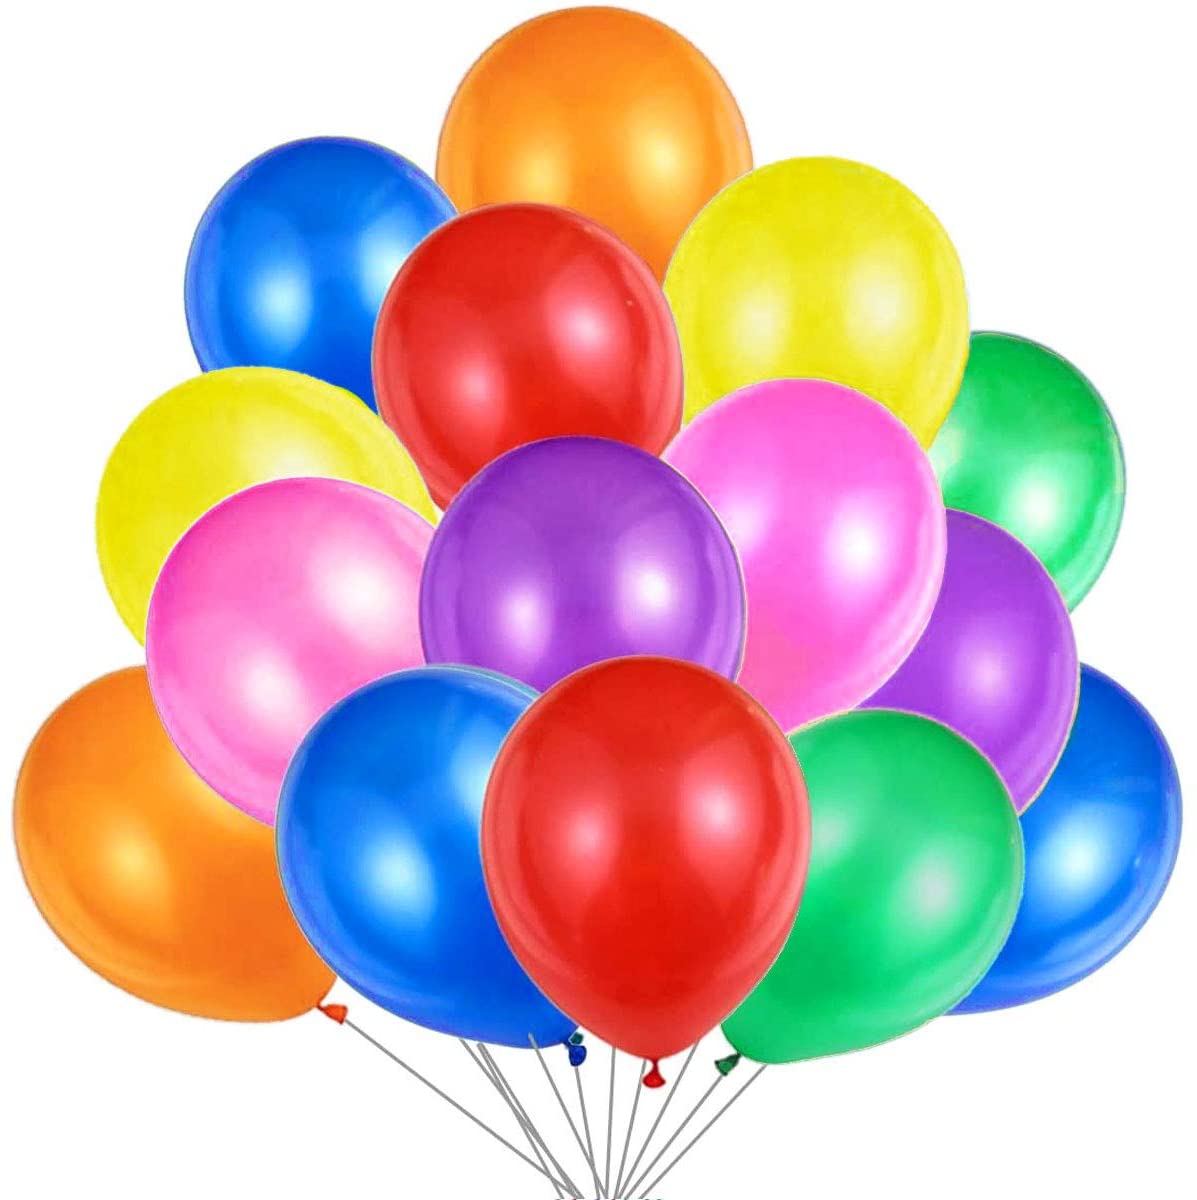 Ballon Ballons Colorés Multicolore - Image gratuite sur Pixabay